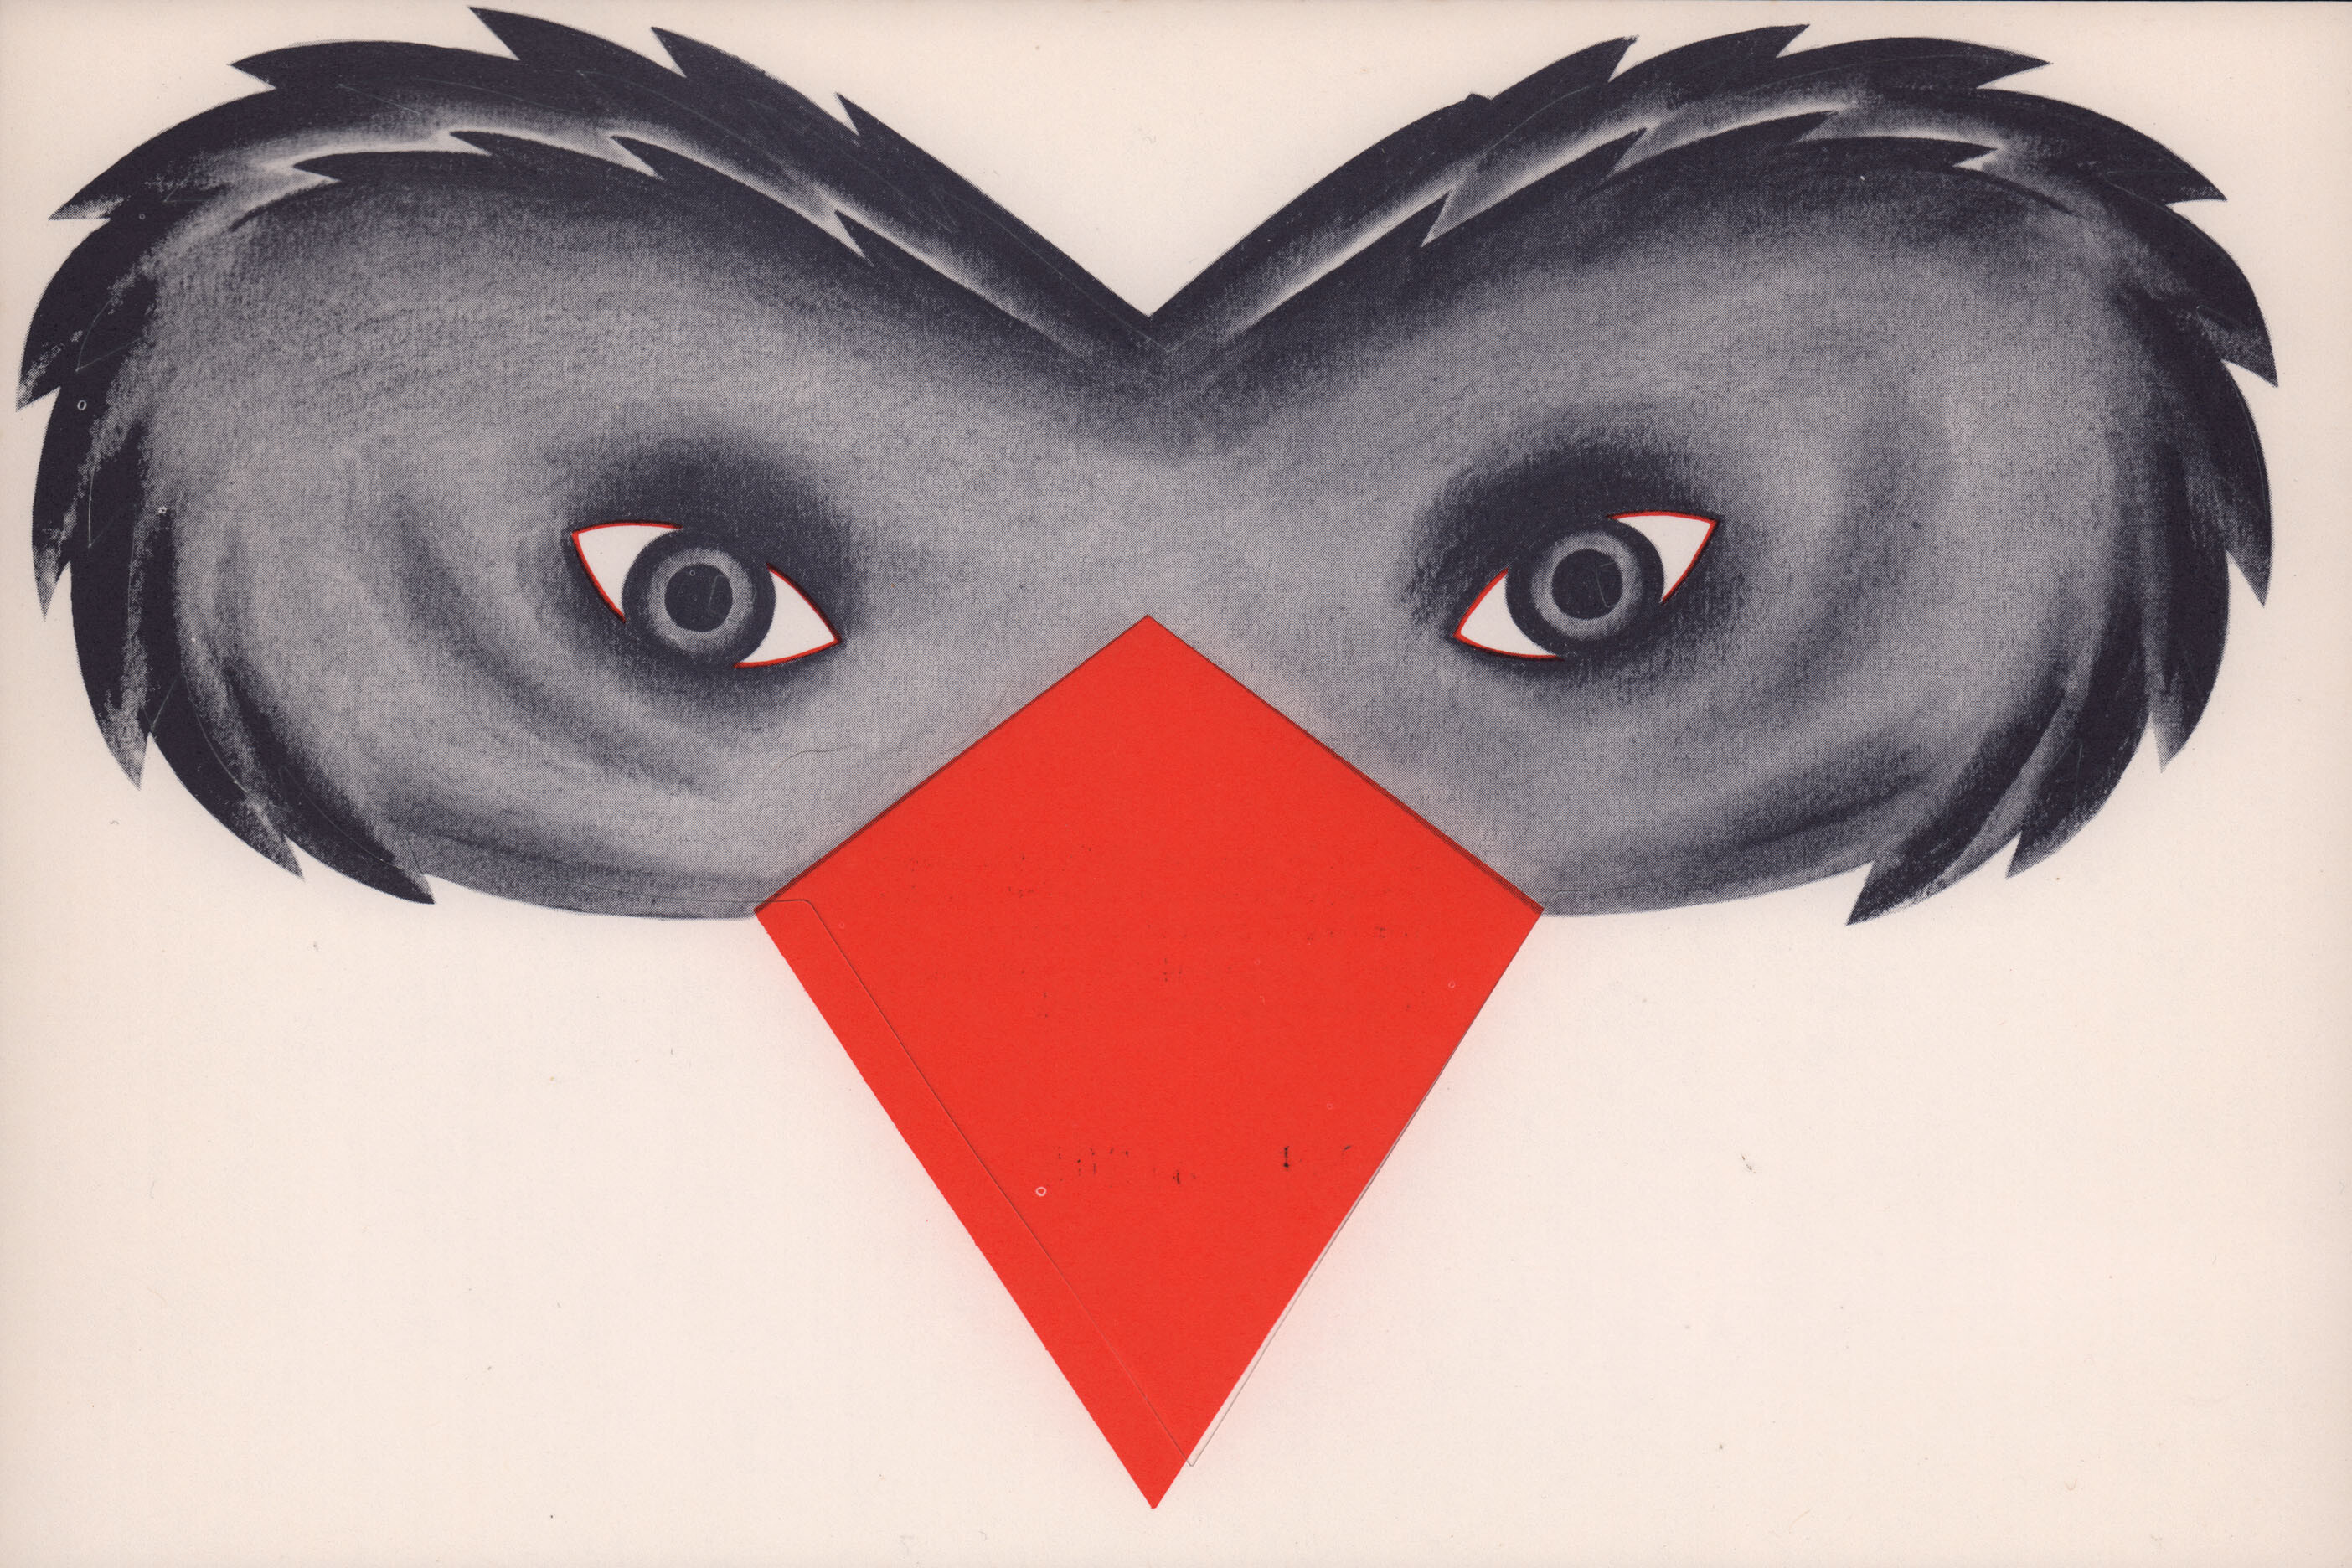 Птицы (The Birds, 1963), режиссёр Альфред Хичкок, постер к фильму в стиле ар-деко (США, 1963 год)